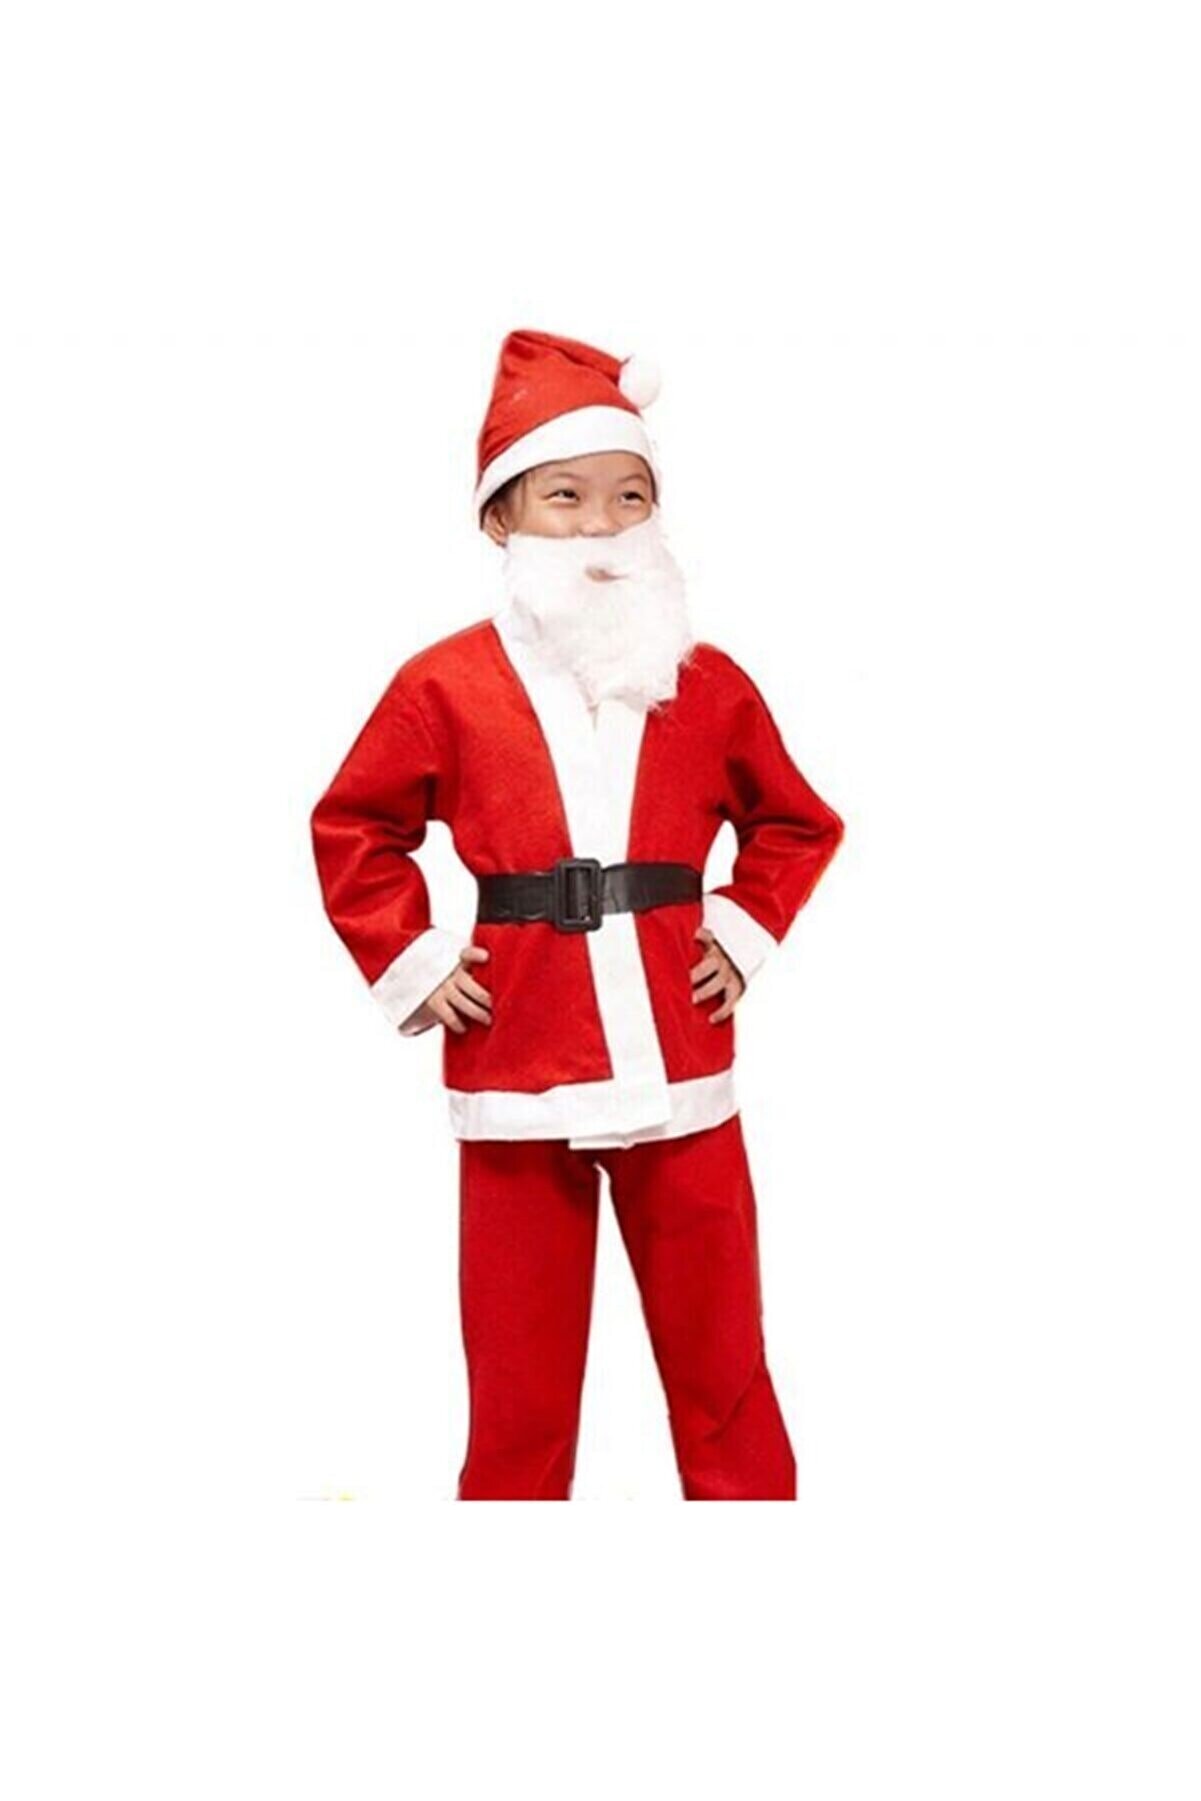 pazariz Erkek Çocuk Yılbaşı Noel Kostümü Kıyafeti 10 Yaş